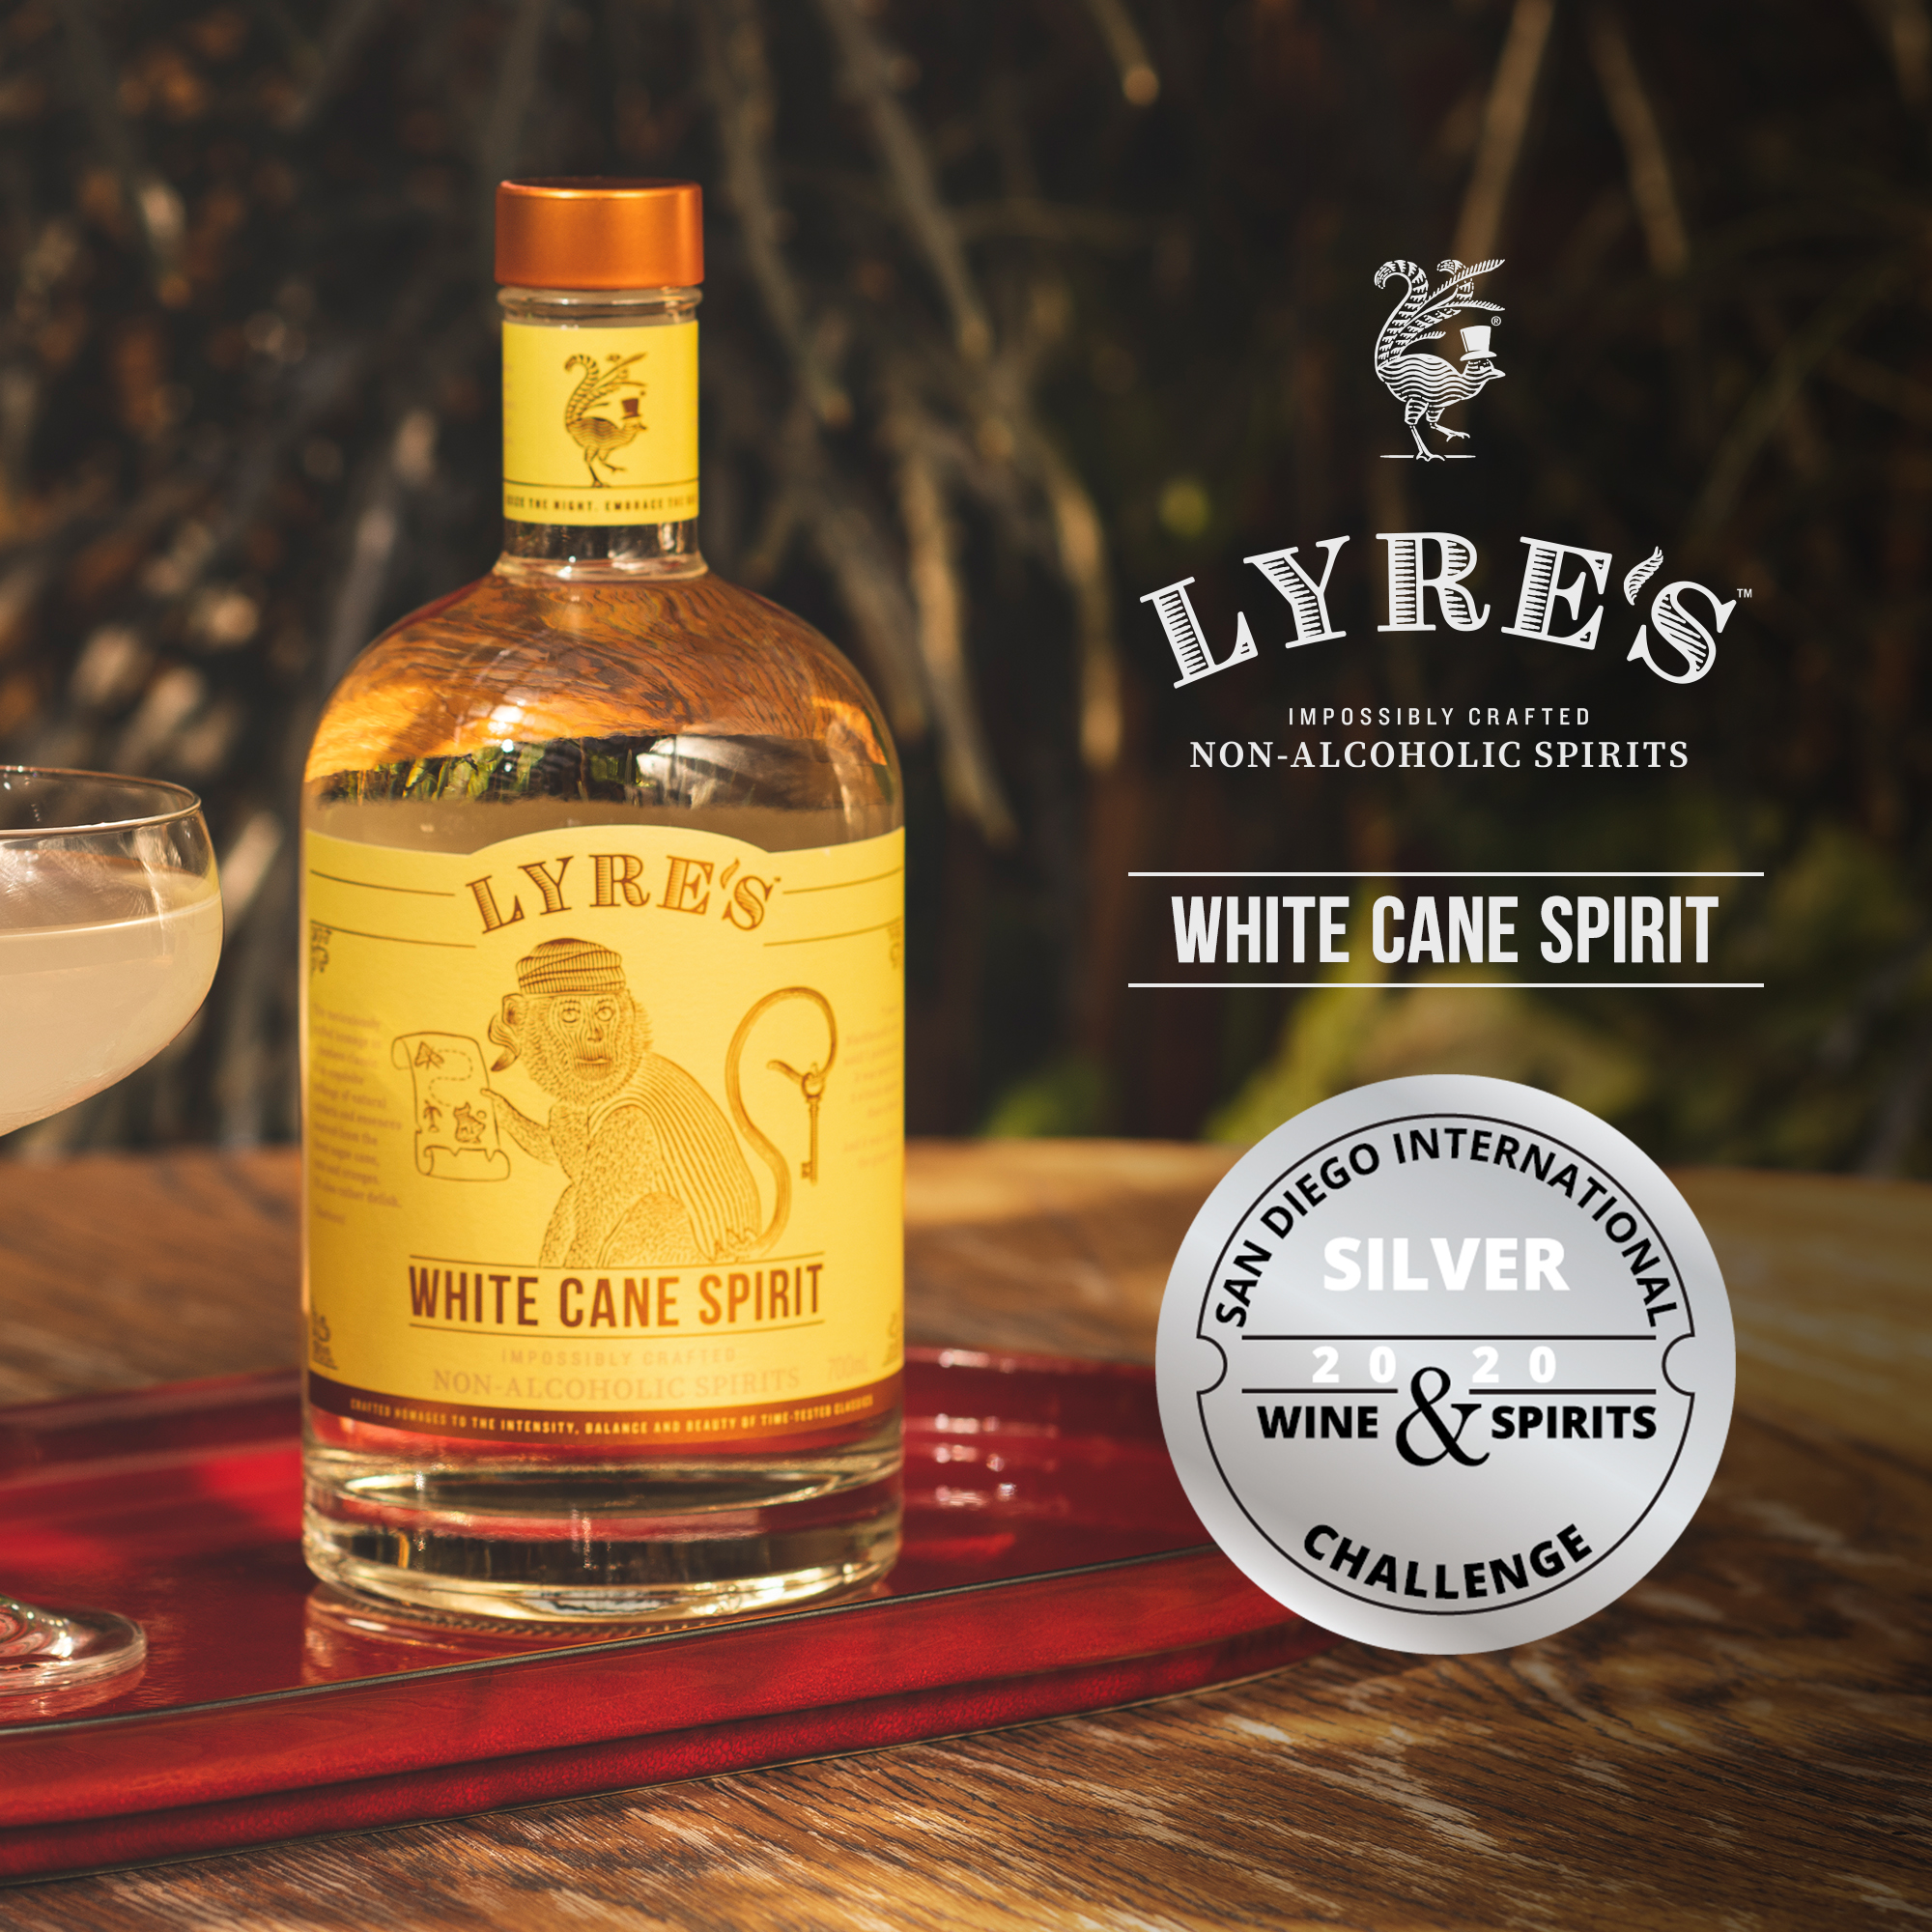 Lyre's White Cane 0% vol. 0,7l